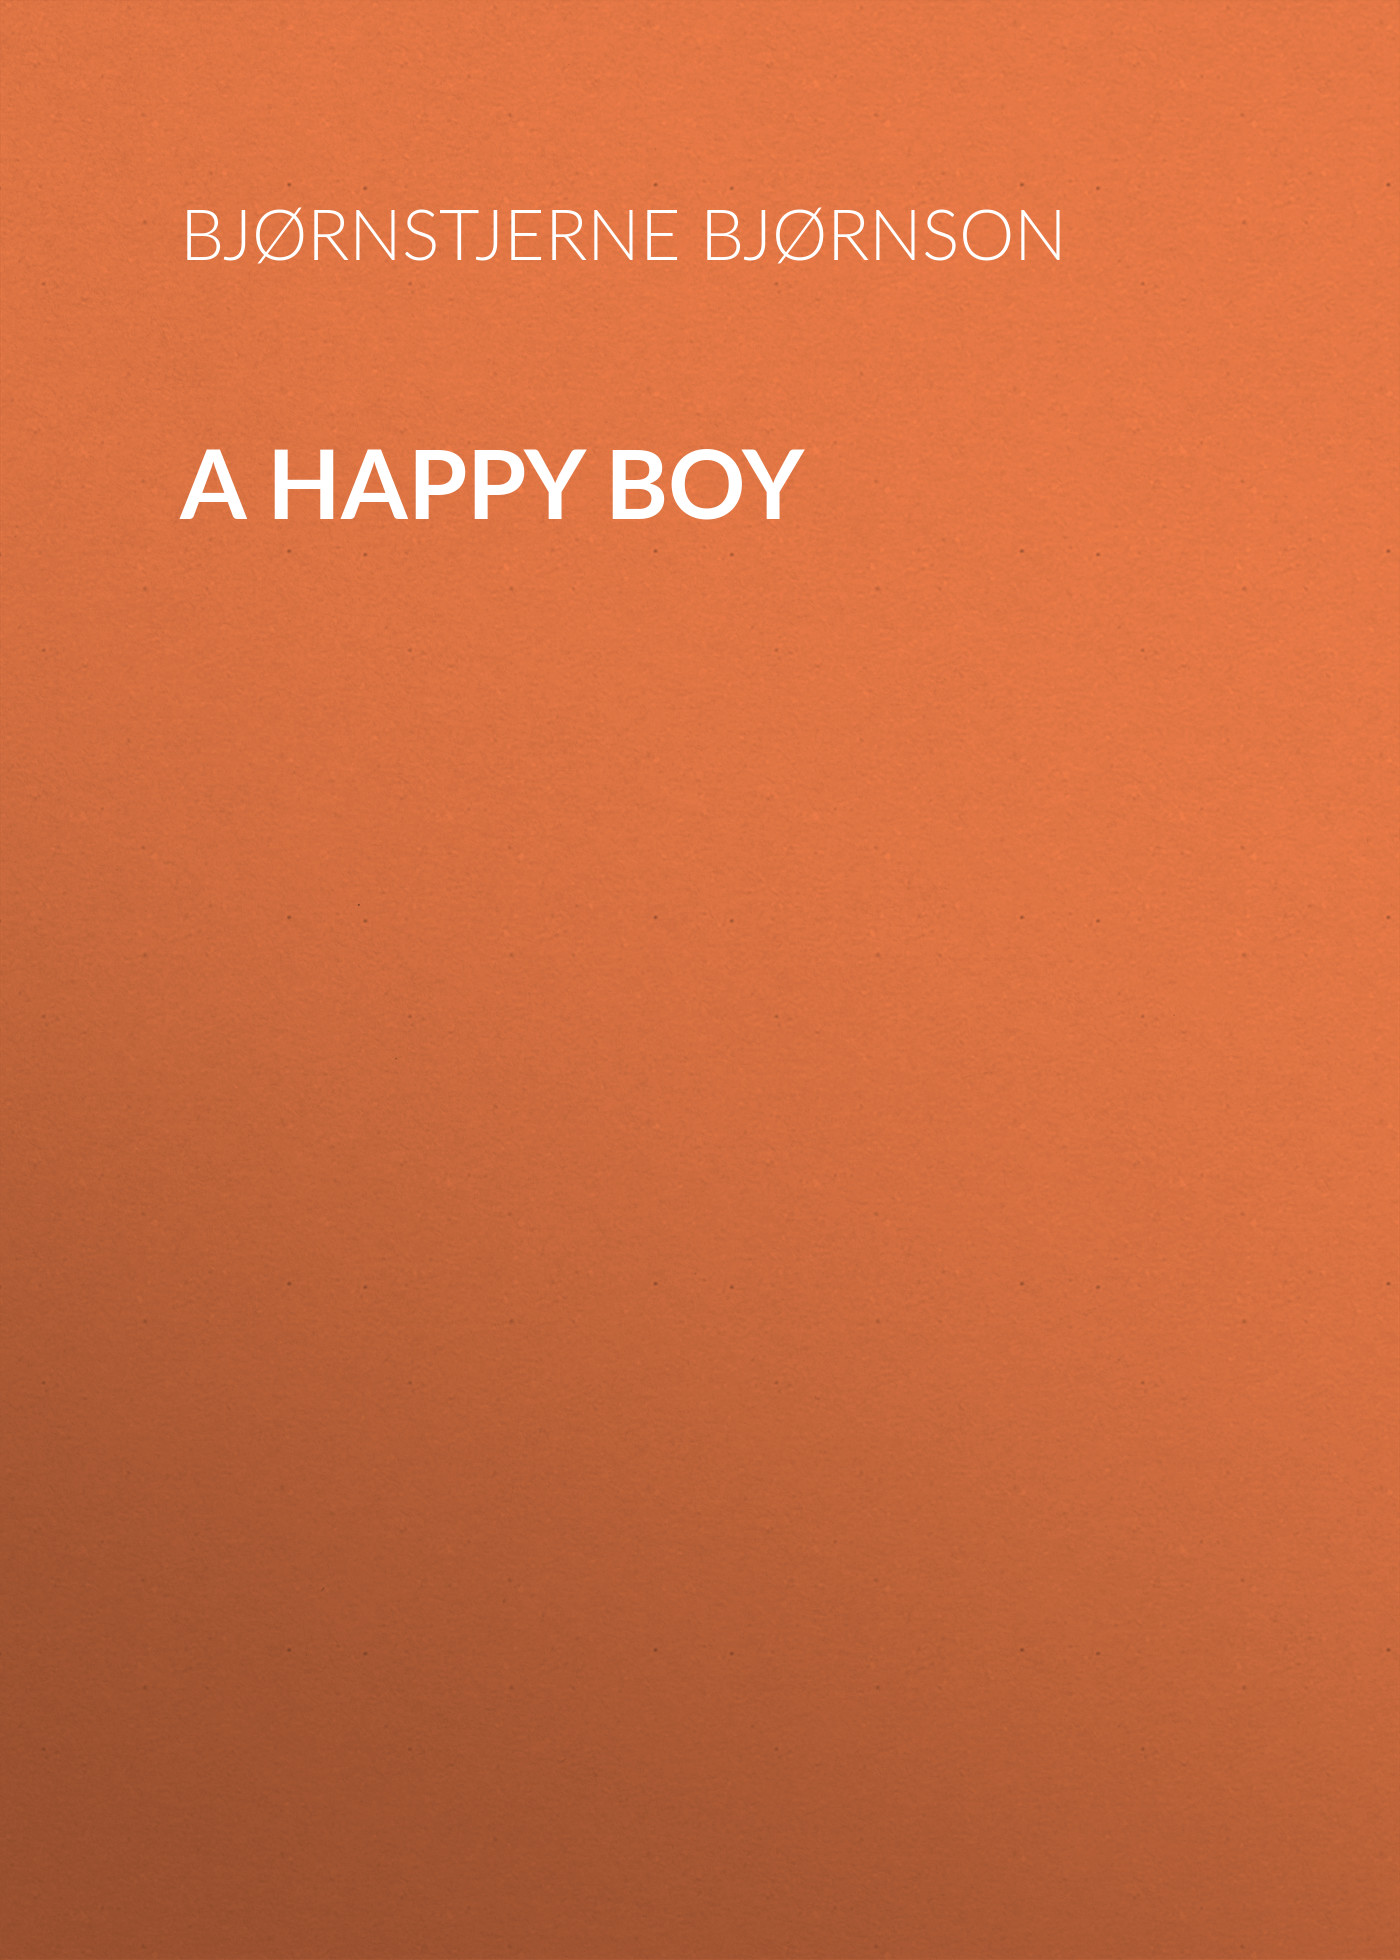 Книга A Happy Boy из серии , созданная Bjørnstjerne Bjørnson, может относится к жанру Зарубежная классика, Зарубежная старинная литература. Стоимость электронной книги A Happy Boy с идентификатором 36364518 составляет 0 руб.